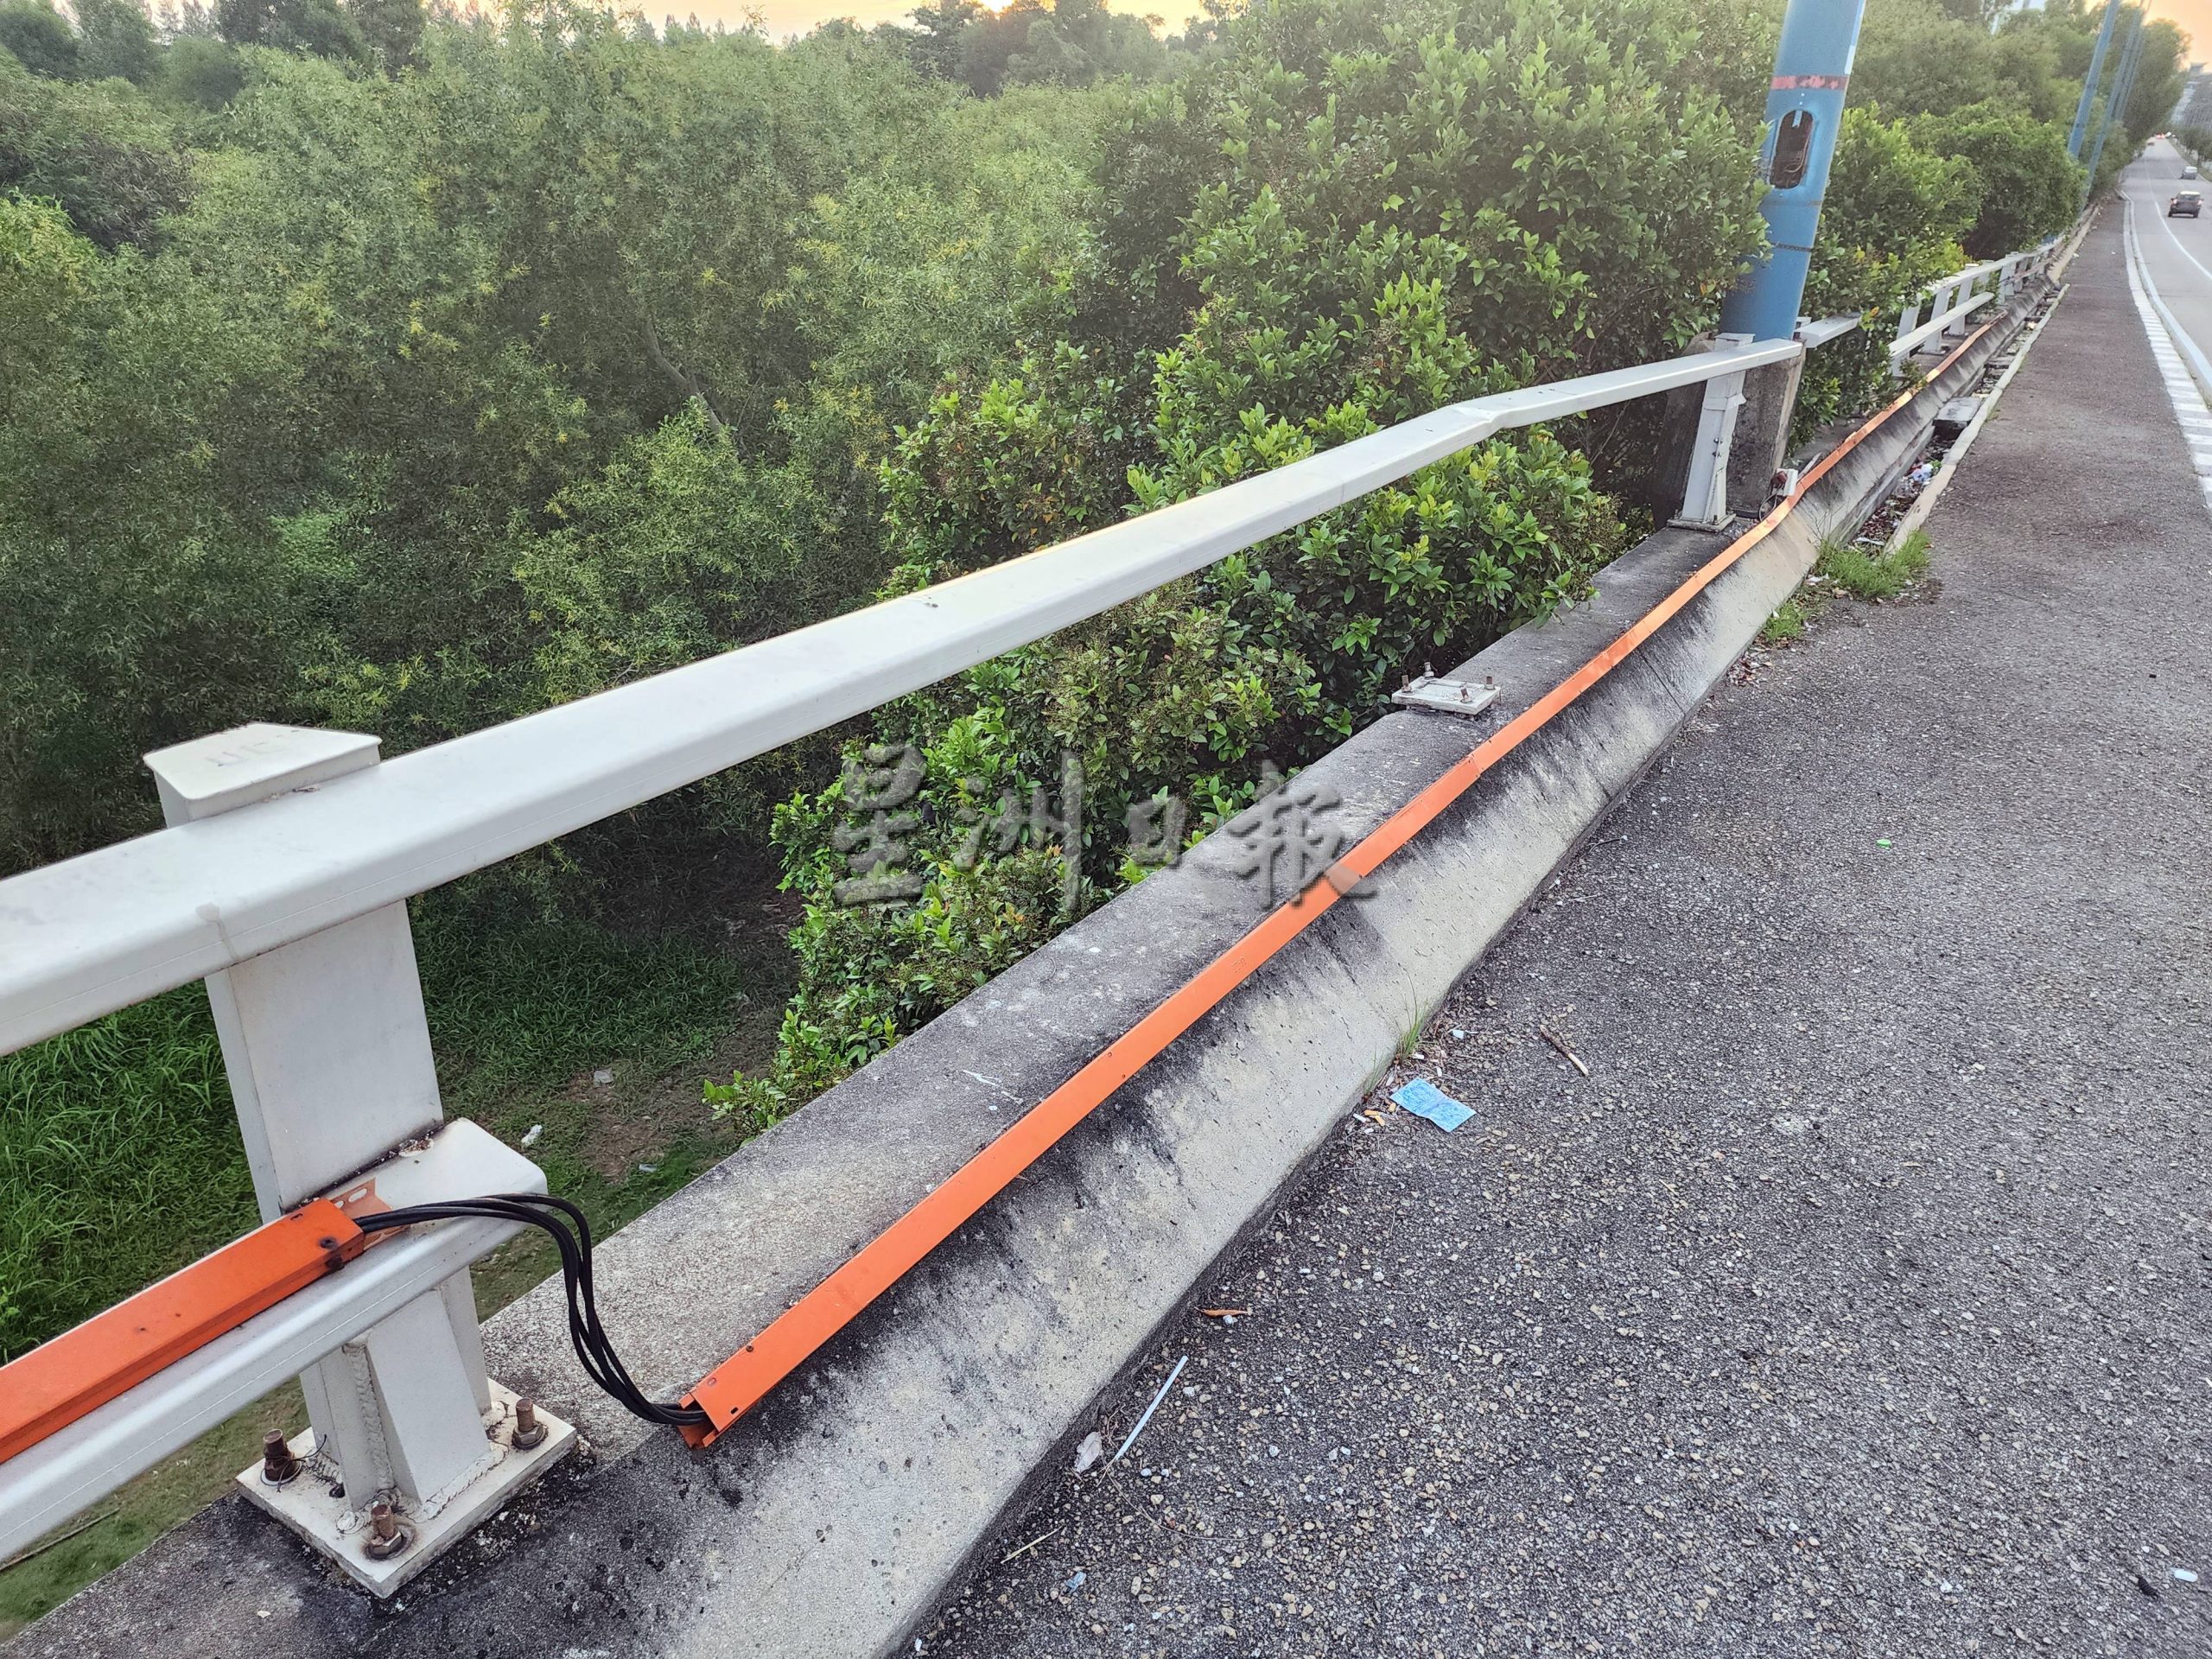 （古城第二版主文）赛阿都阿兹路大桥栏杆损坏逾半年未维修，理由为等待拨款，令人难以接受